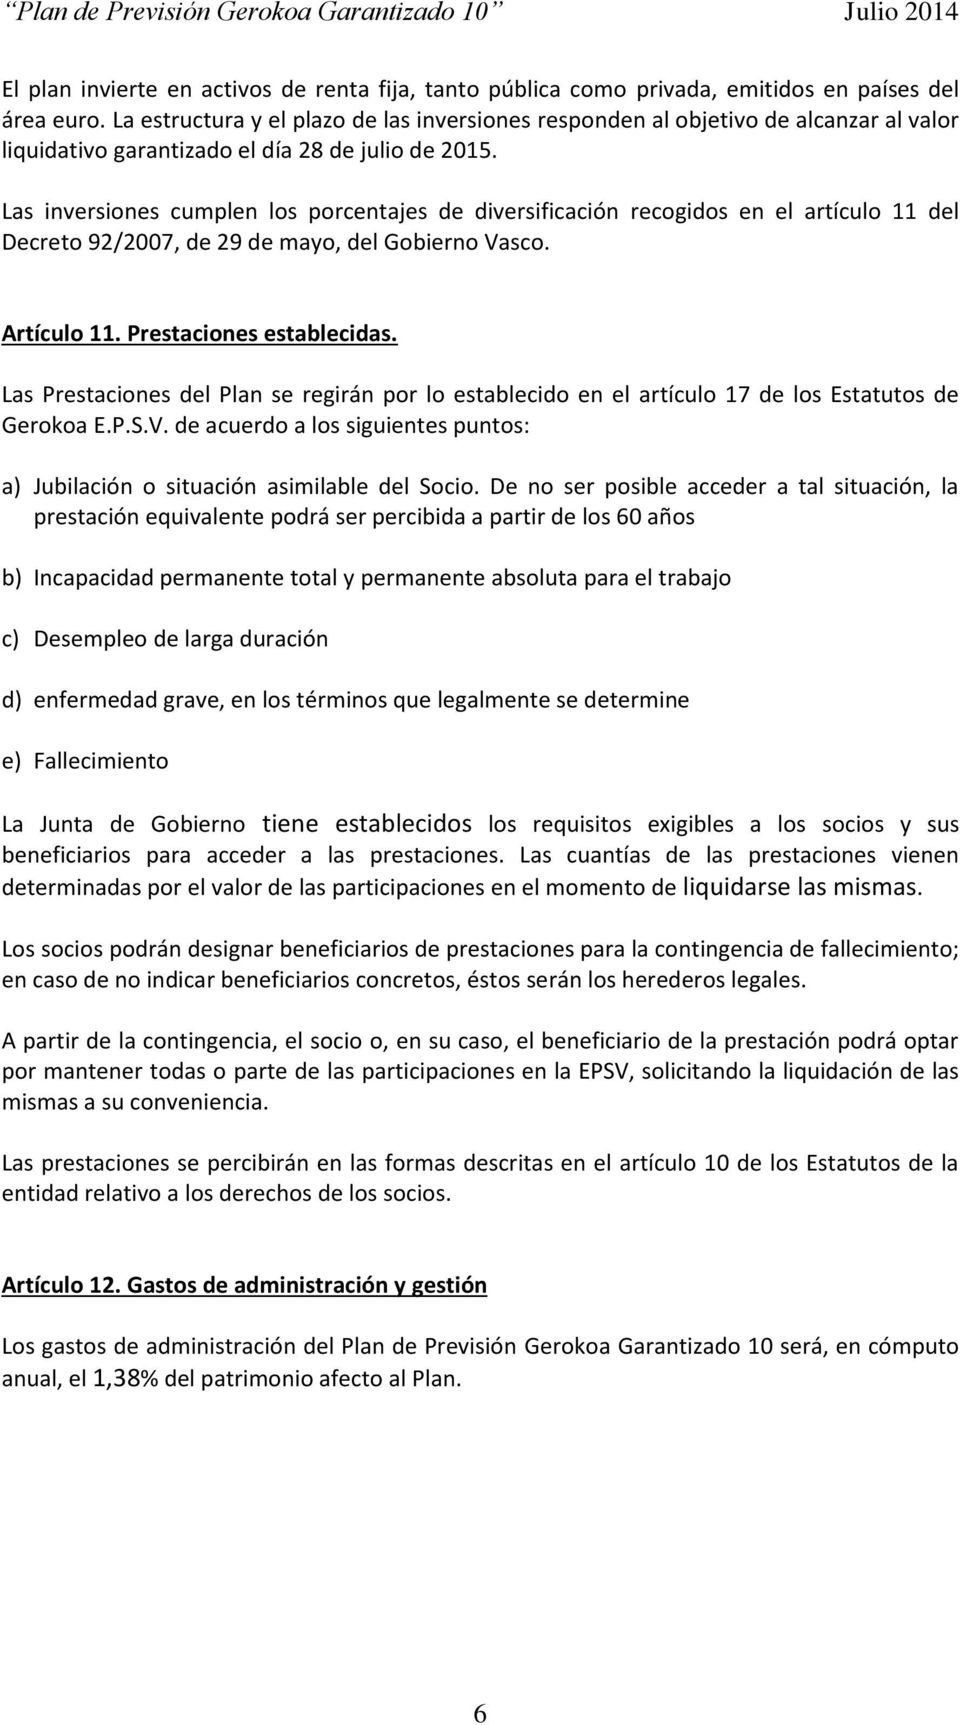 Las inversiones cumplen los porcentajes de diversificación recogidos en el artículo 11 del Decreto 92/2007, de 29 de mayo, del Gobierno Vasco. Artículo 11. Prestaciones establecidas.